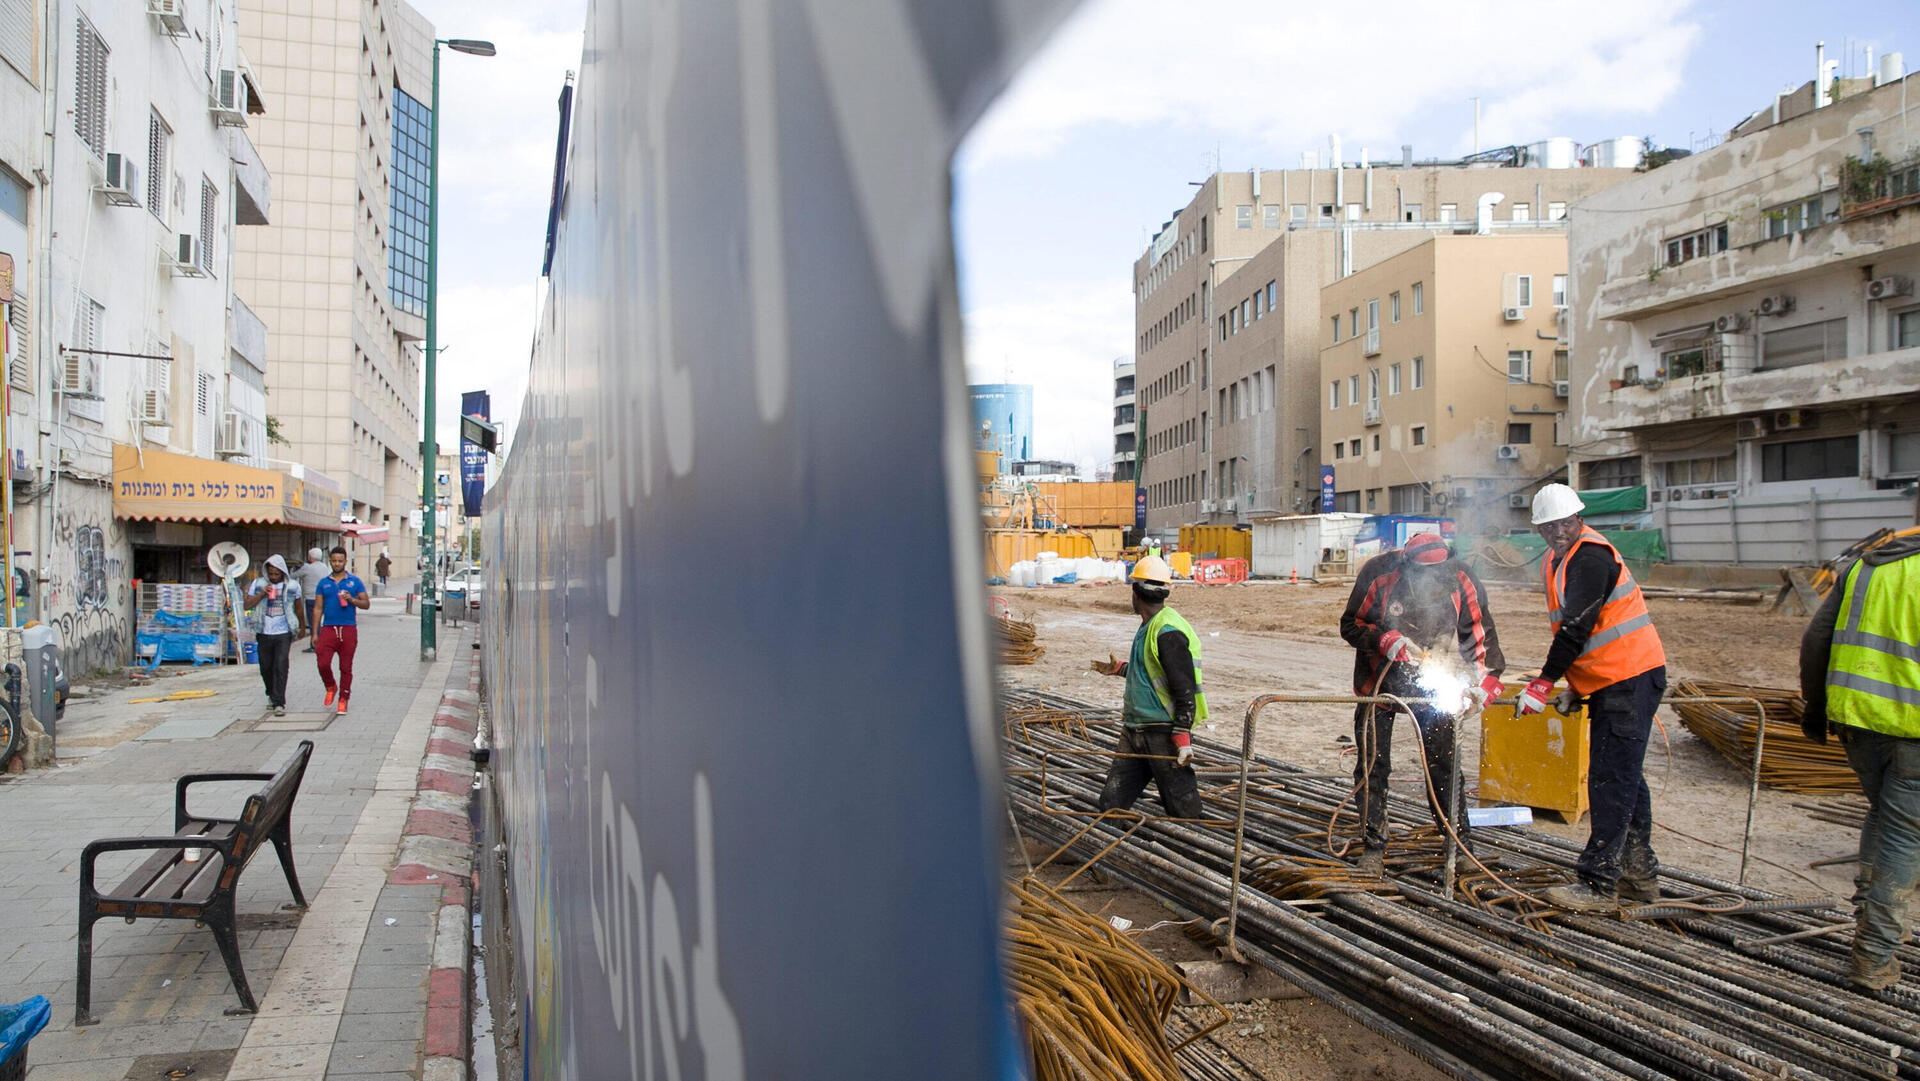  רכבת הקלה עבודות רכבת קלה תחנת אלנבי תל אביב